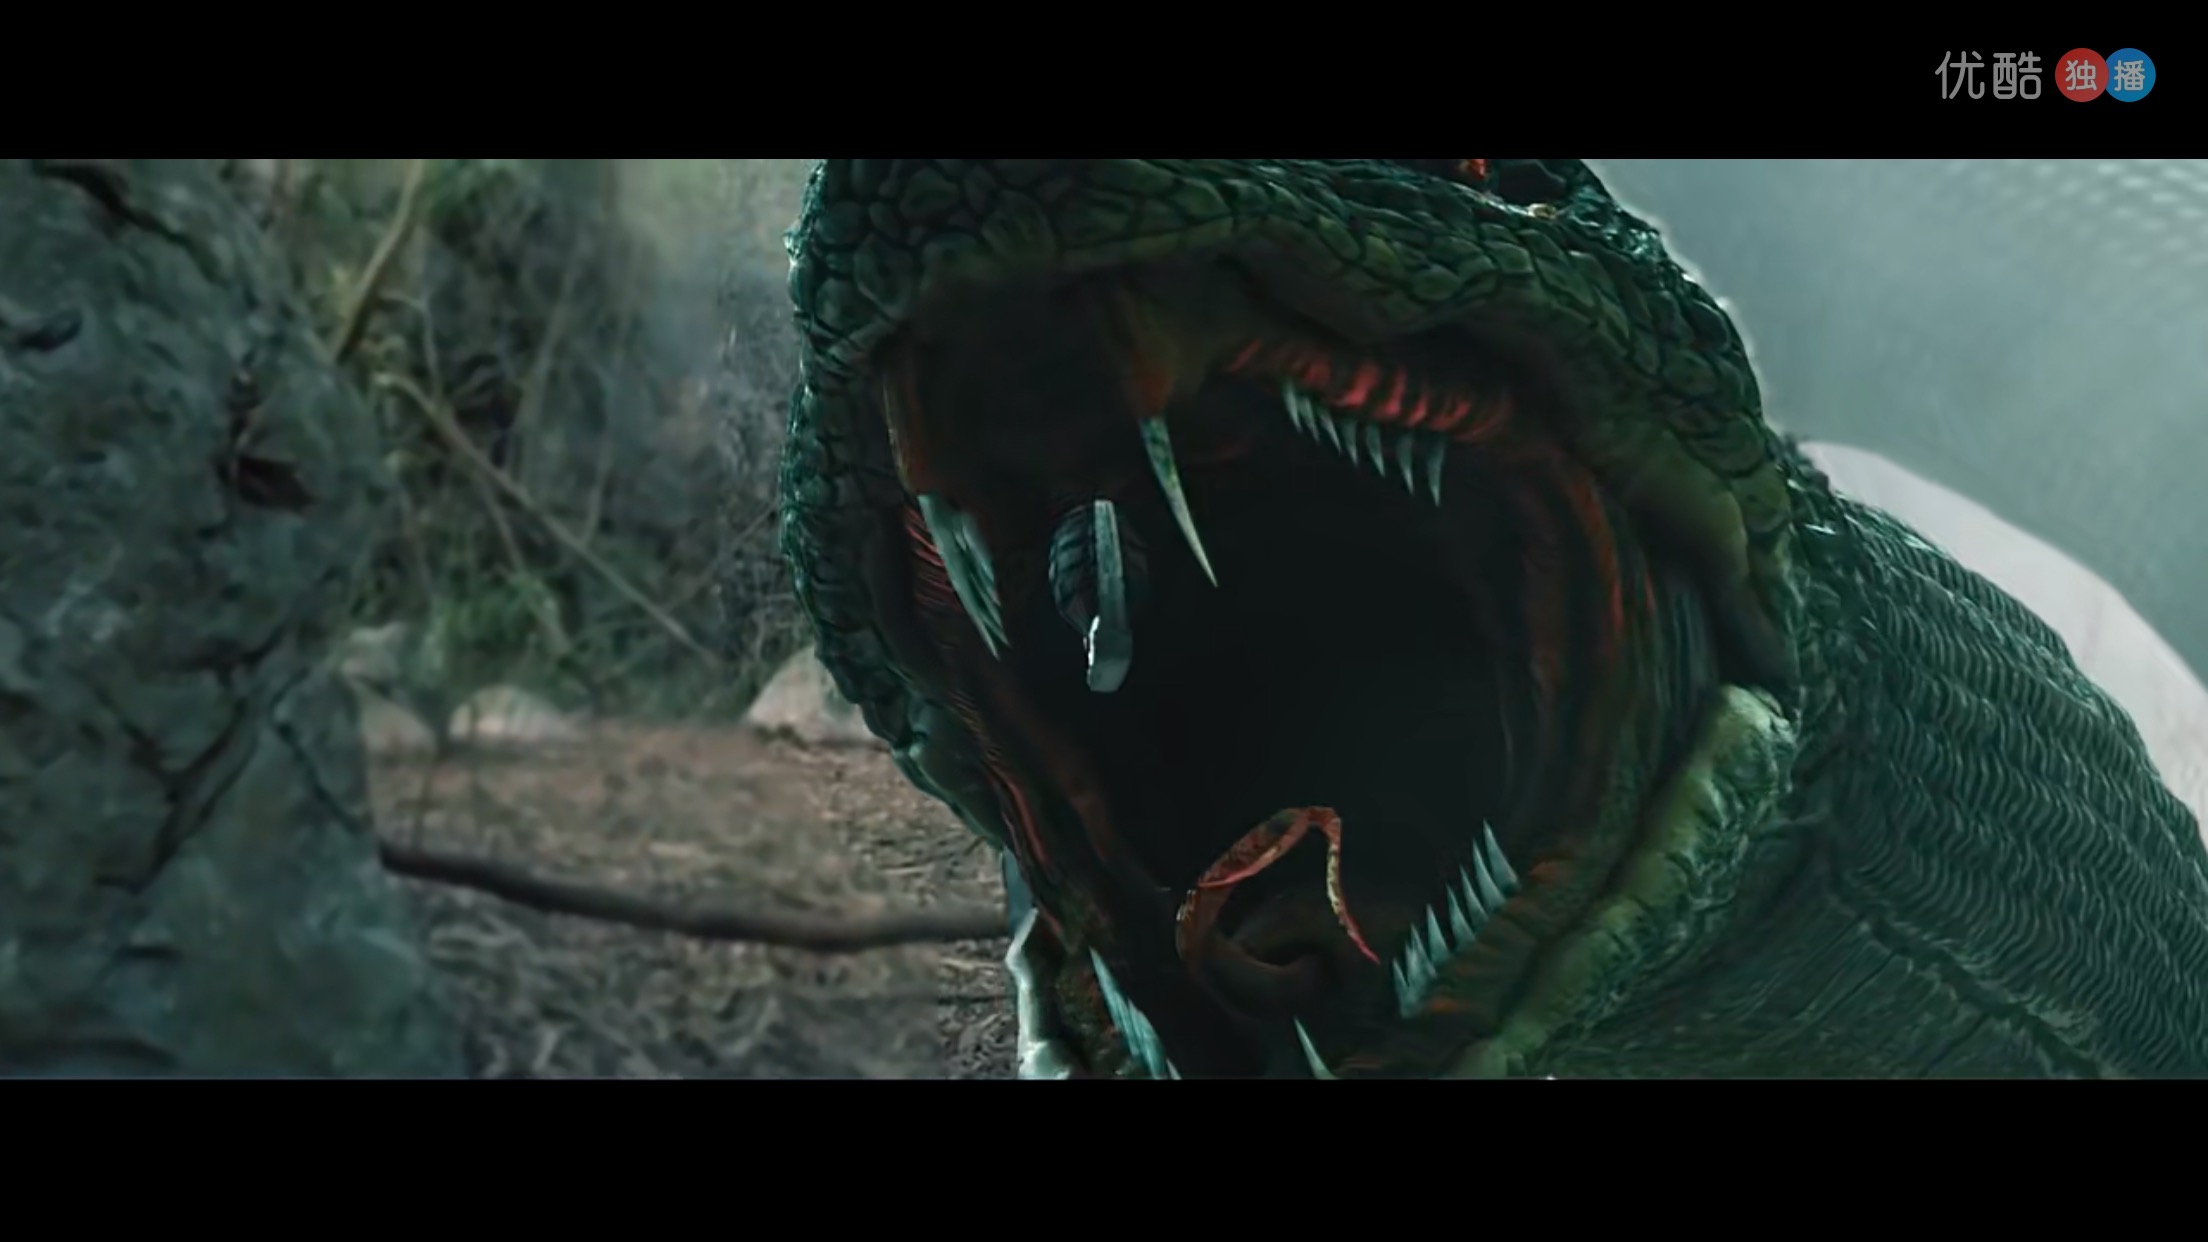 此时影片过半,巨蛇终于在电影开始前惊鸿一瞥之后再次露面了,影片迎来